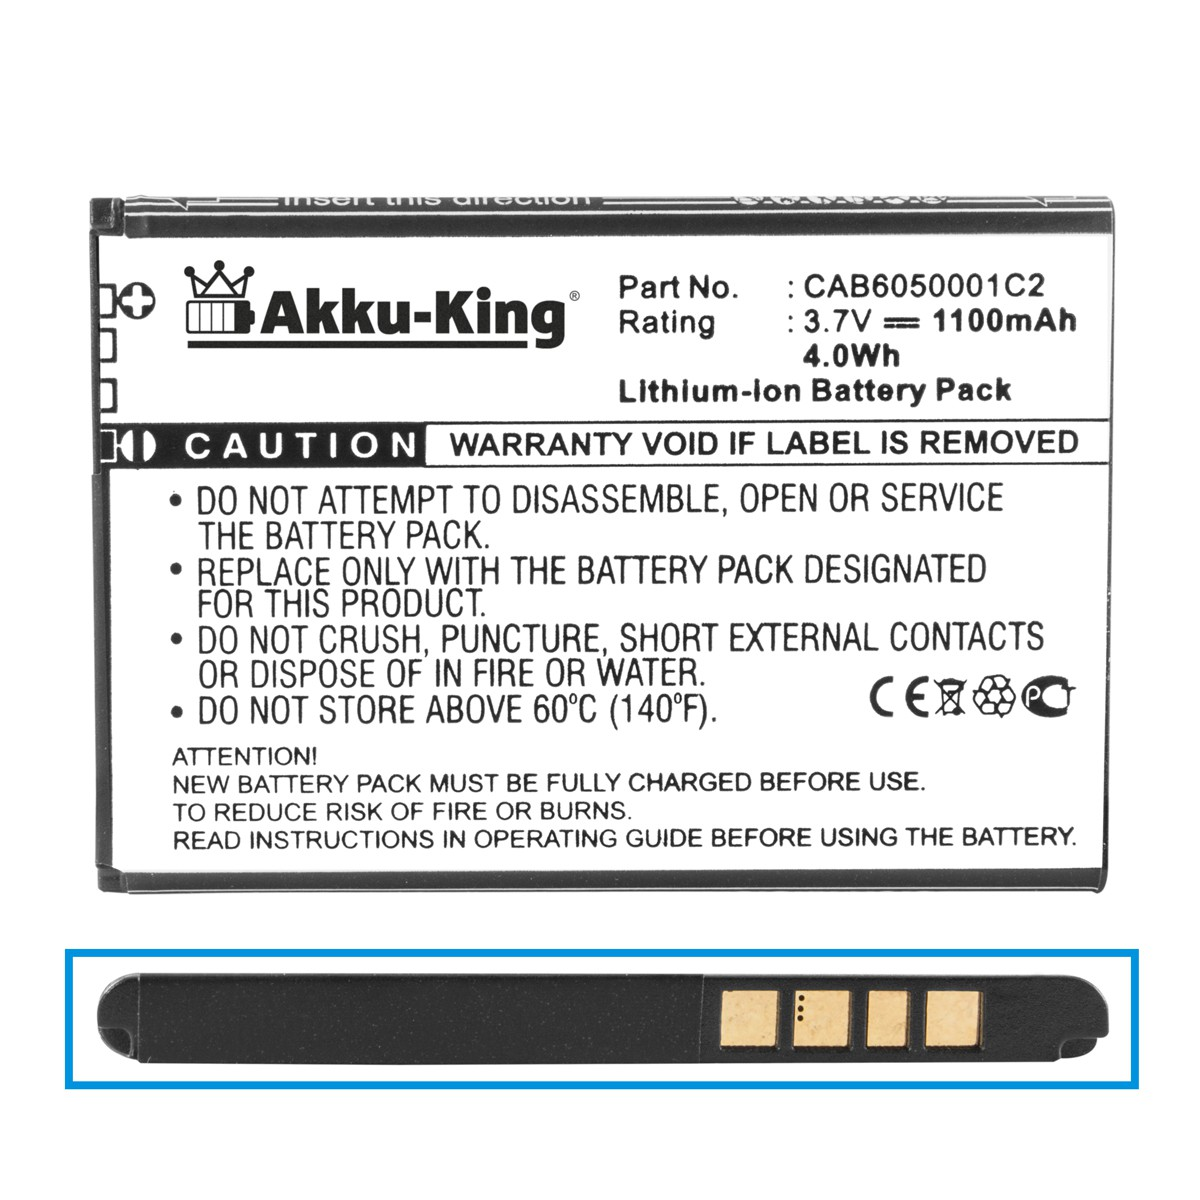 Alcatel Handy-Akku, Li-Ion Akku AKKU-KING 1100mAh Volt, 3.7 für CAB6050001C2